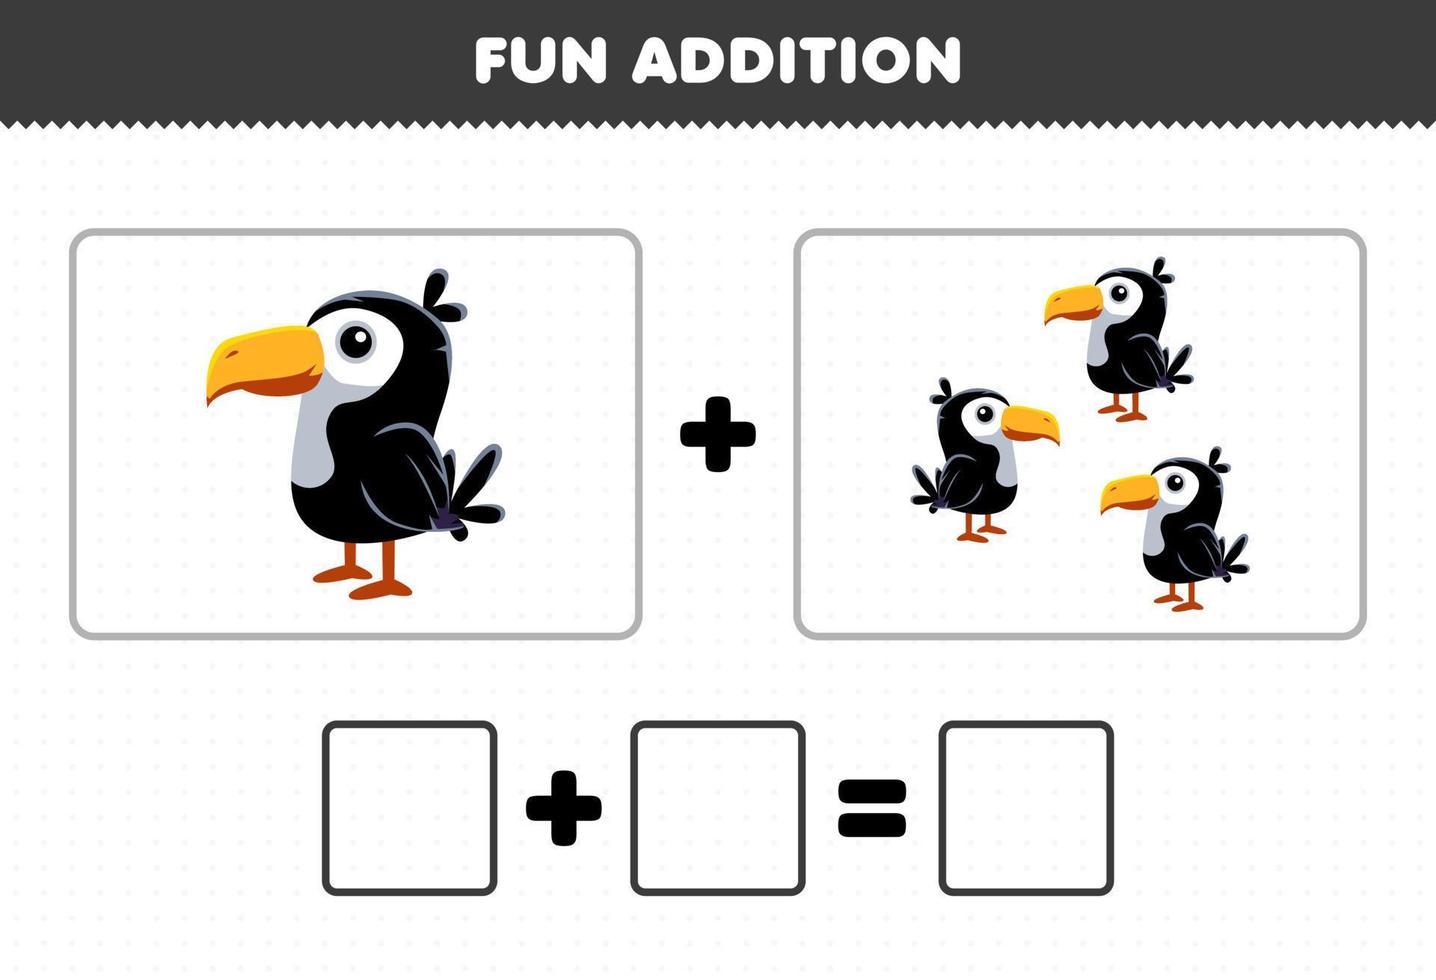 jeu éducatif pour les enfants ajout amusant en comptant la feuille de travail des images de toucan d'animaux de dessin animé mignon vecteur